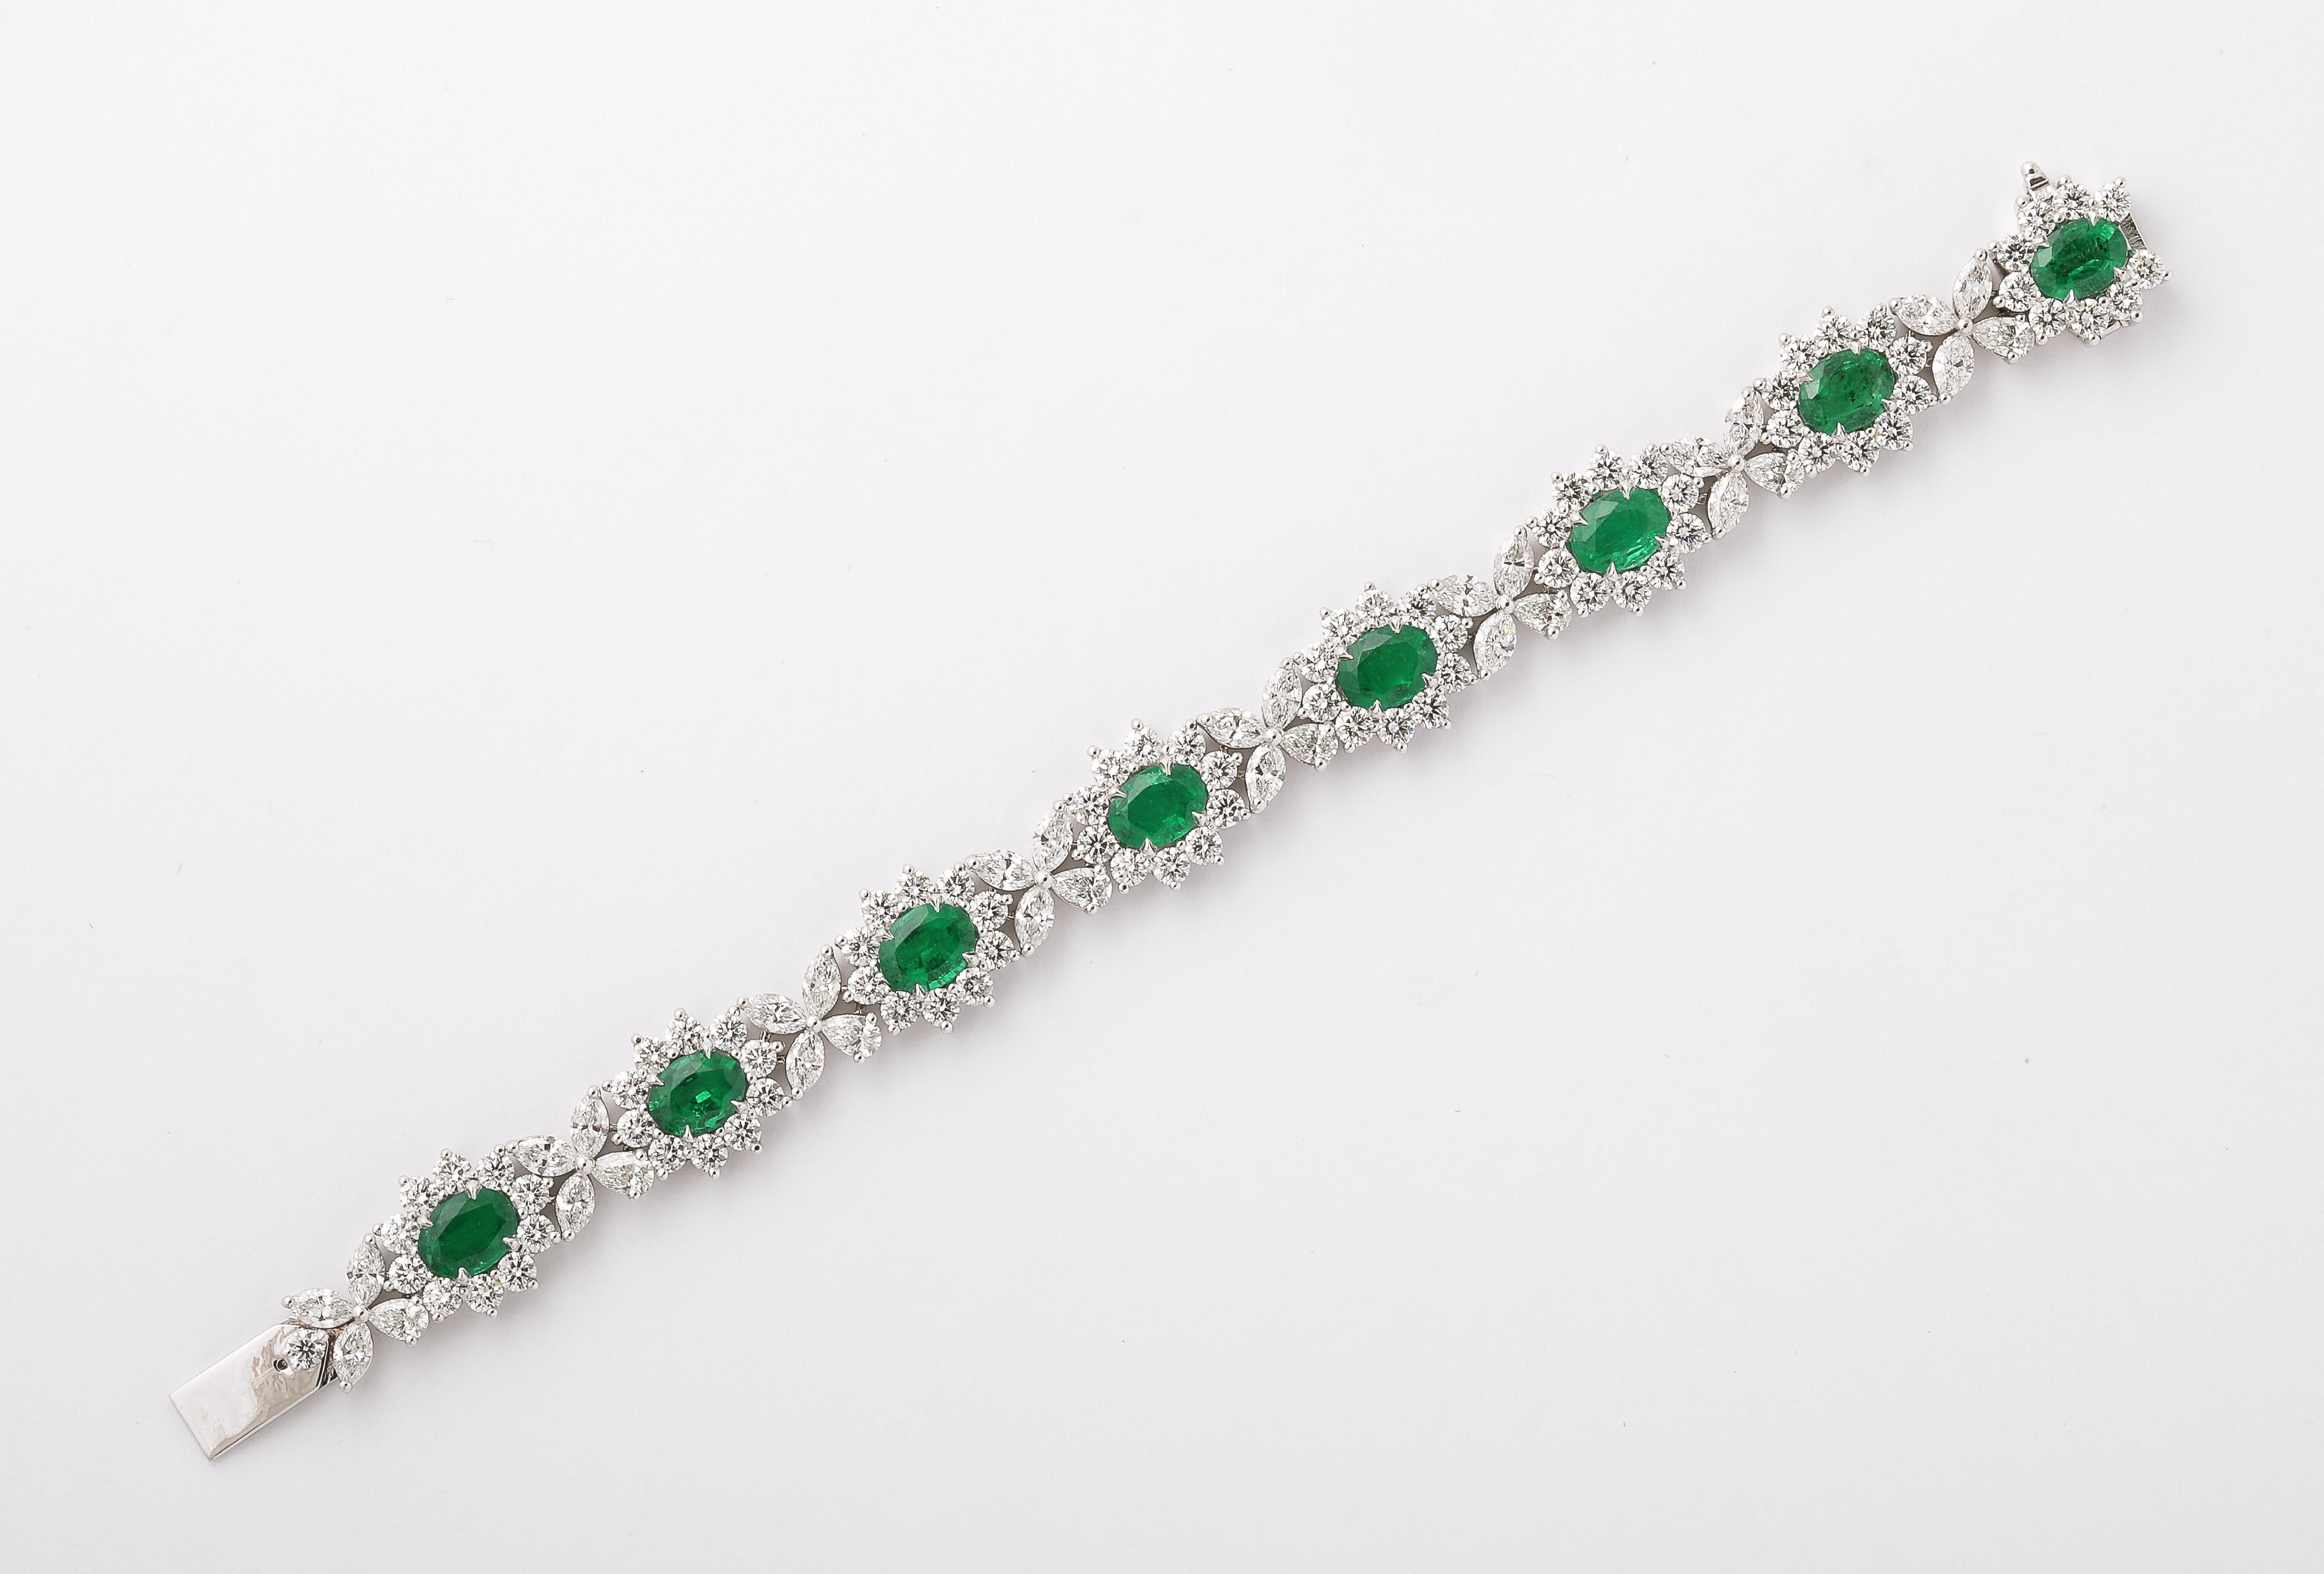 
Une pièce EXCEPTIONNELLE ! 

9,78 carats d'émeraudes certifiées d'un vert intense à vif. 

15.25 carats de diamants blancs ronds de taille brillant, marquise et poire. 

En platine. 

Longueur de 6,75 pouces - largeur d'un demi-pouce. 

Certifié